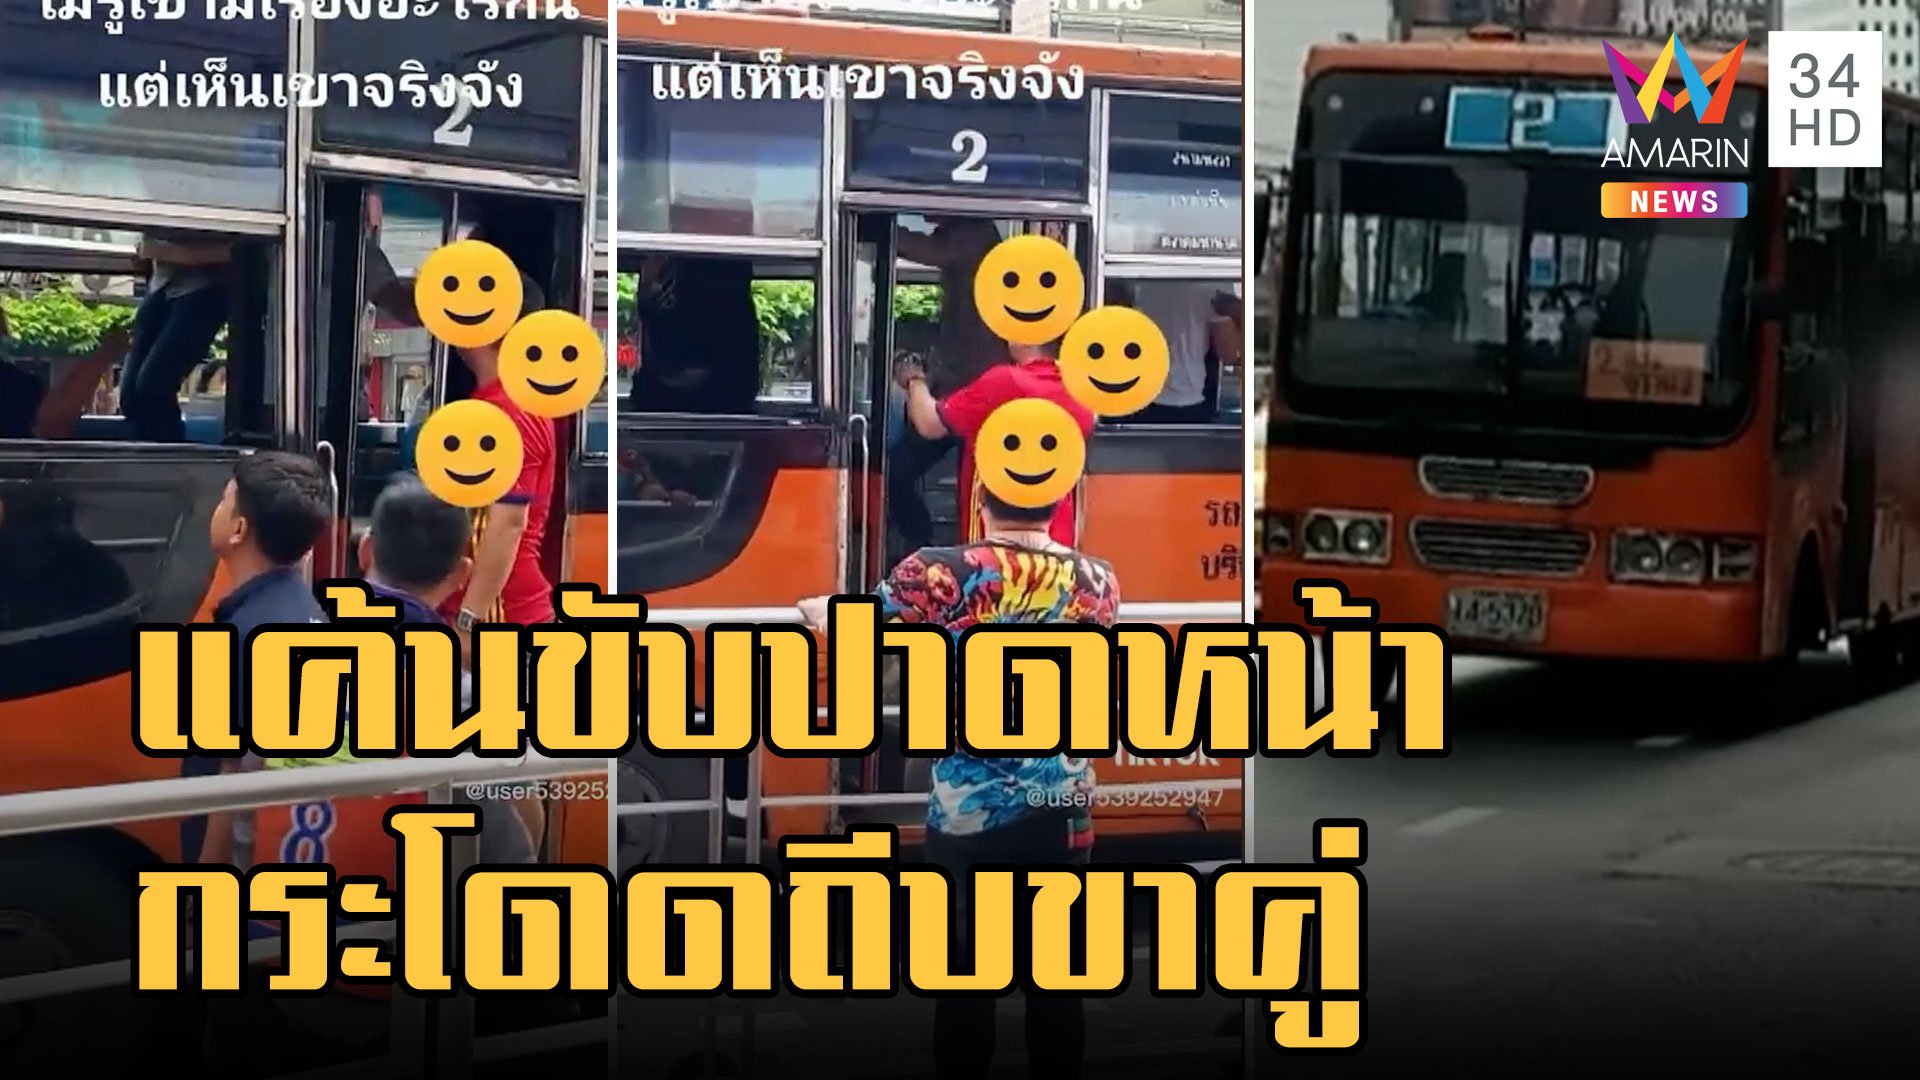 หนุ่มหัวร้อน โหนราวจับกระโดดถีบคนขับรถเมล์ ฉุนขับปาดหน้า | ข่าวเที่ยงอมรินทร์ | 7 พ.ย. 65 | AMARIN TVHD34